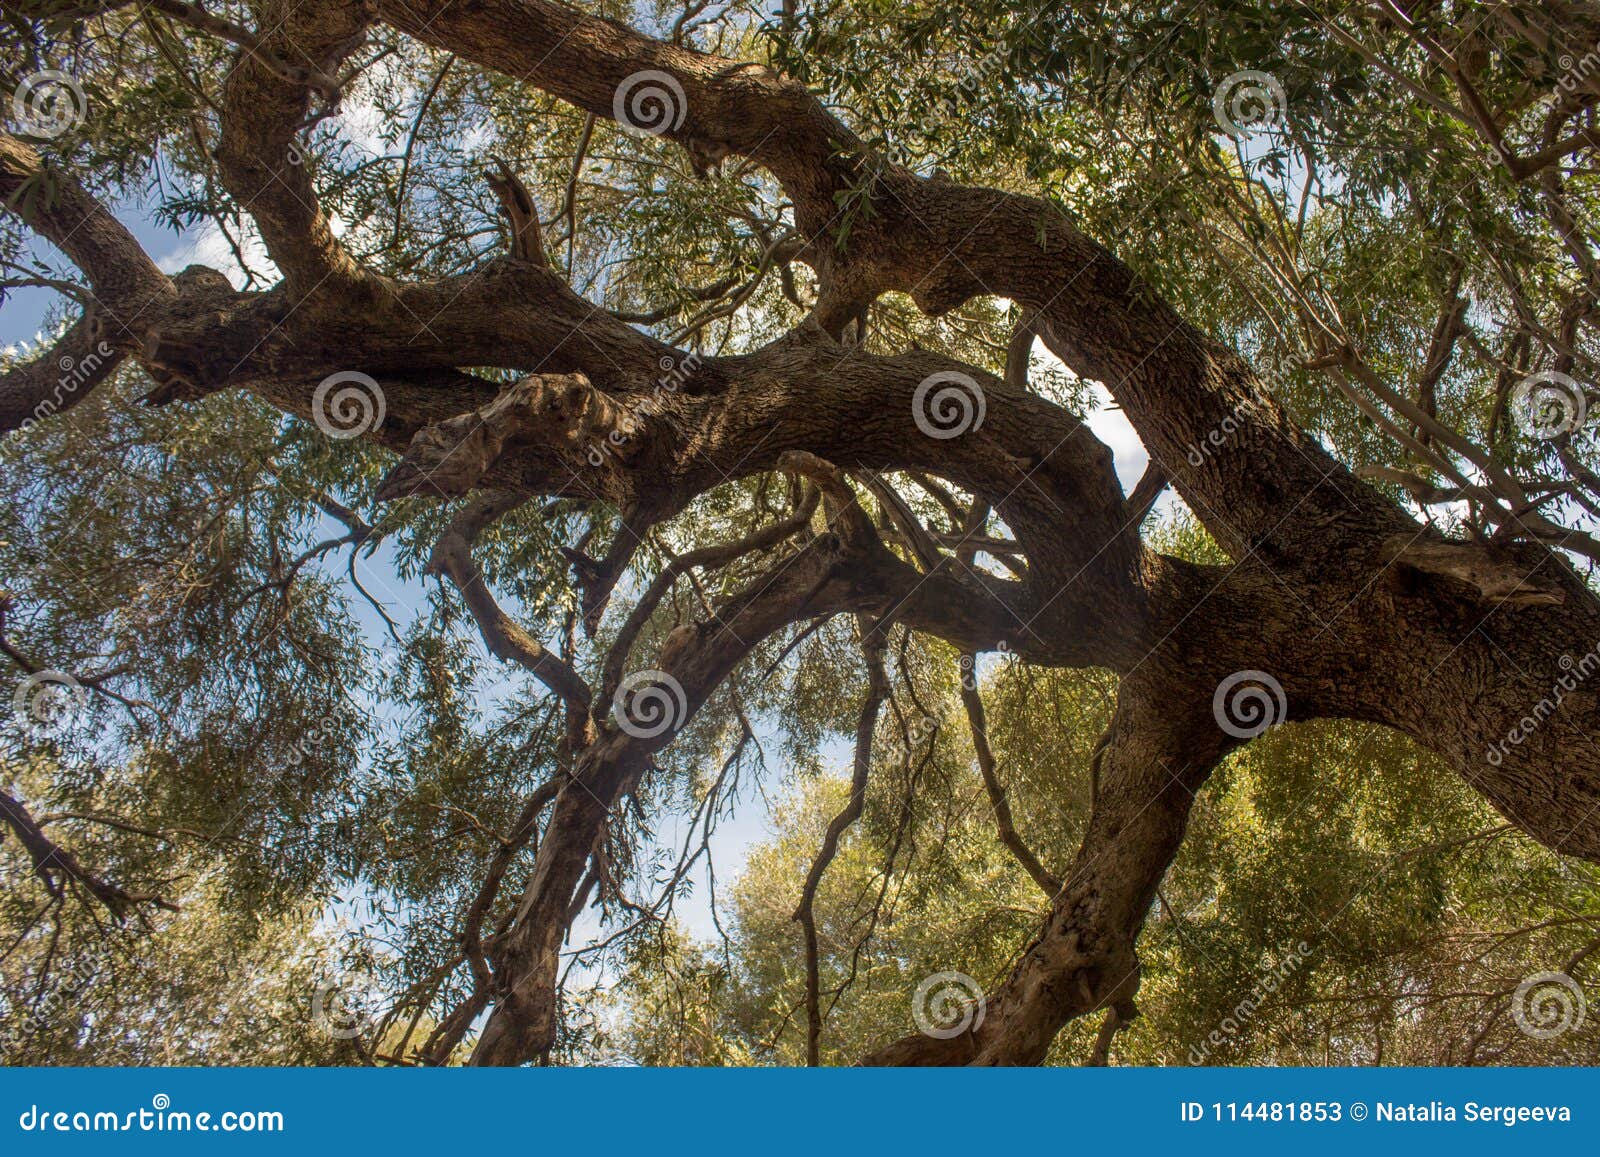 olivastro millenario - thousand years old tree